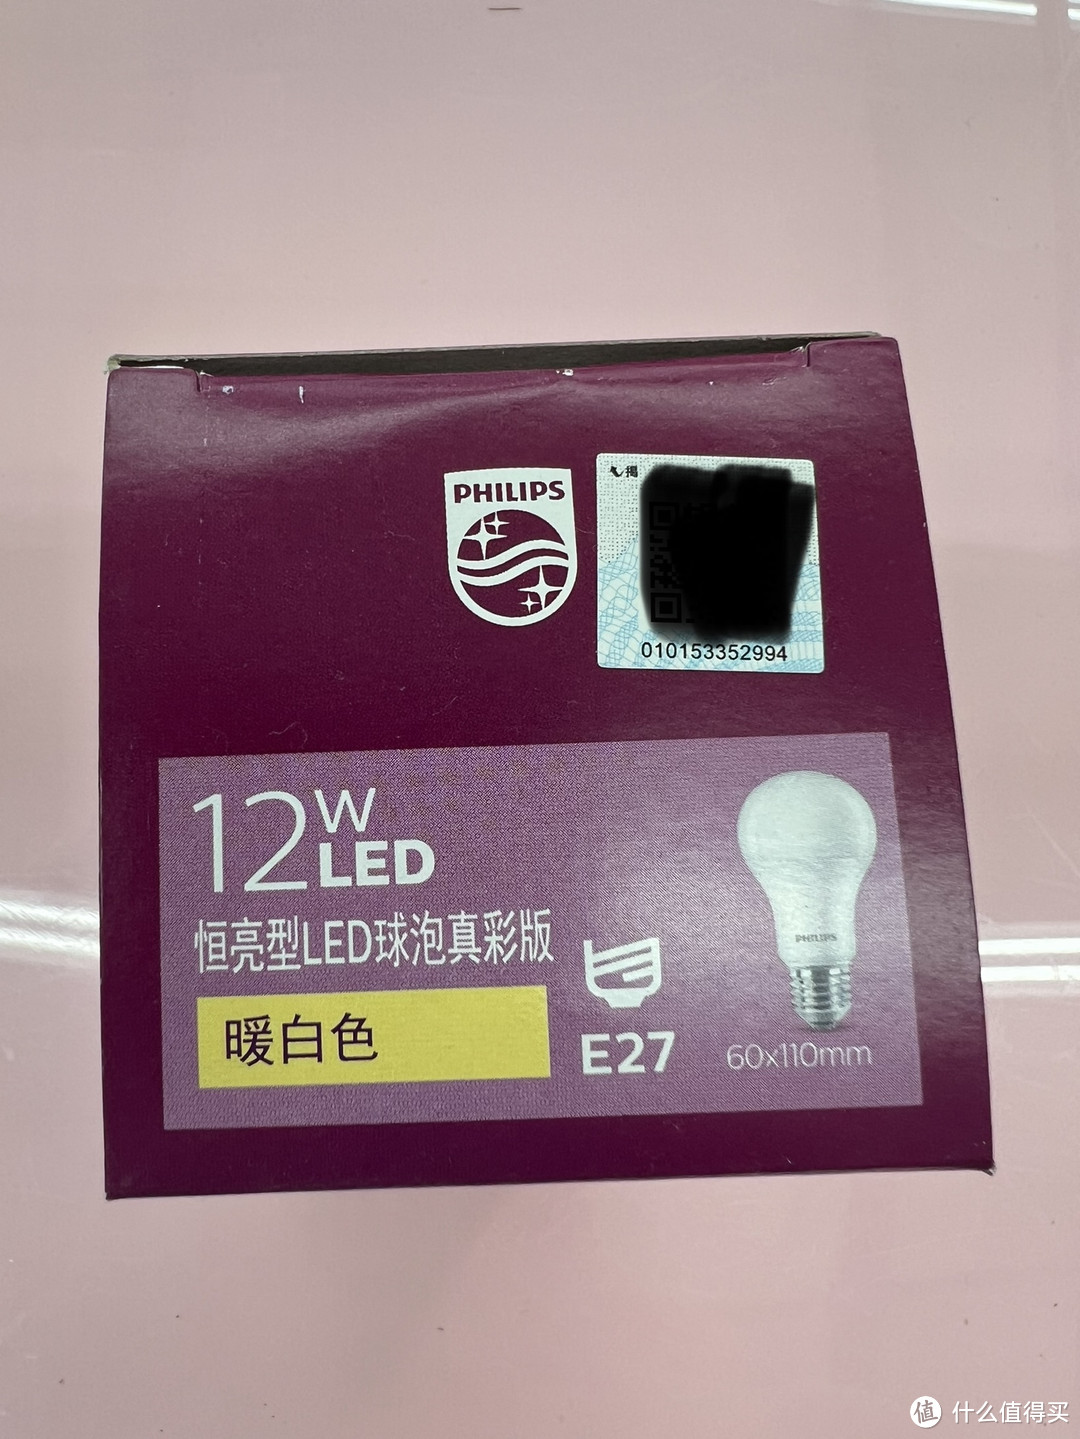 亮度翻倍，省电又环保！飞利浦12w恒亮型LED灯泡，让你的家更明亮！